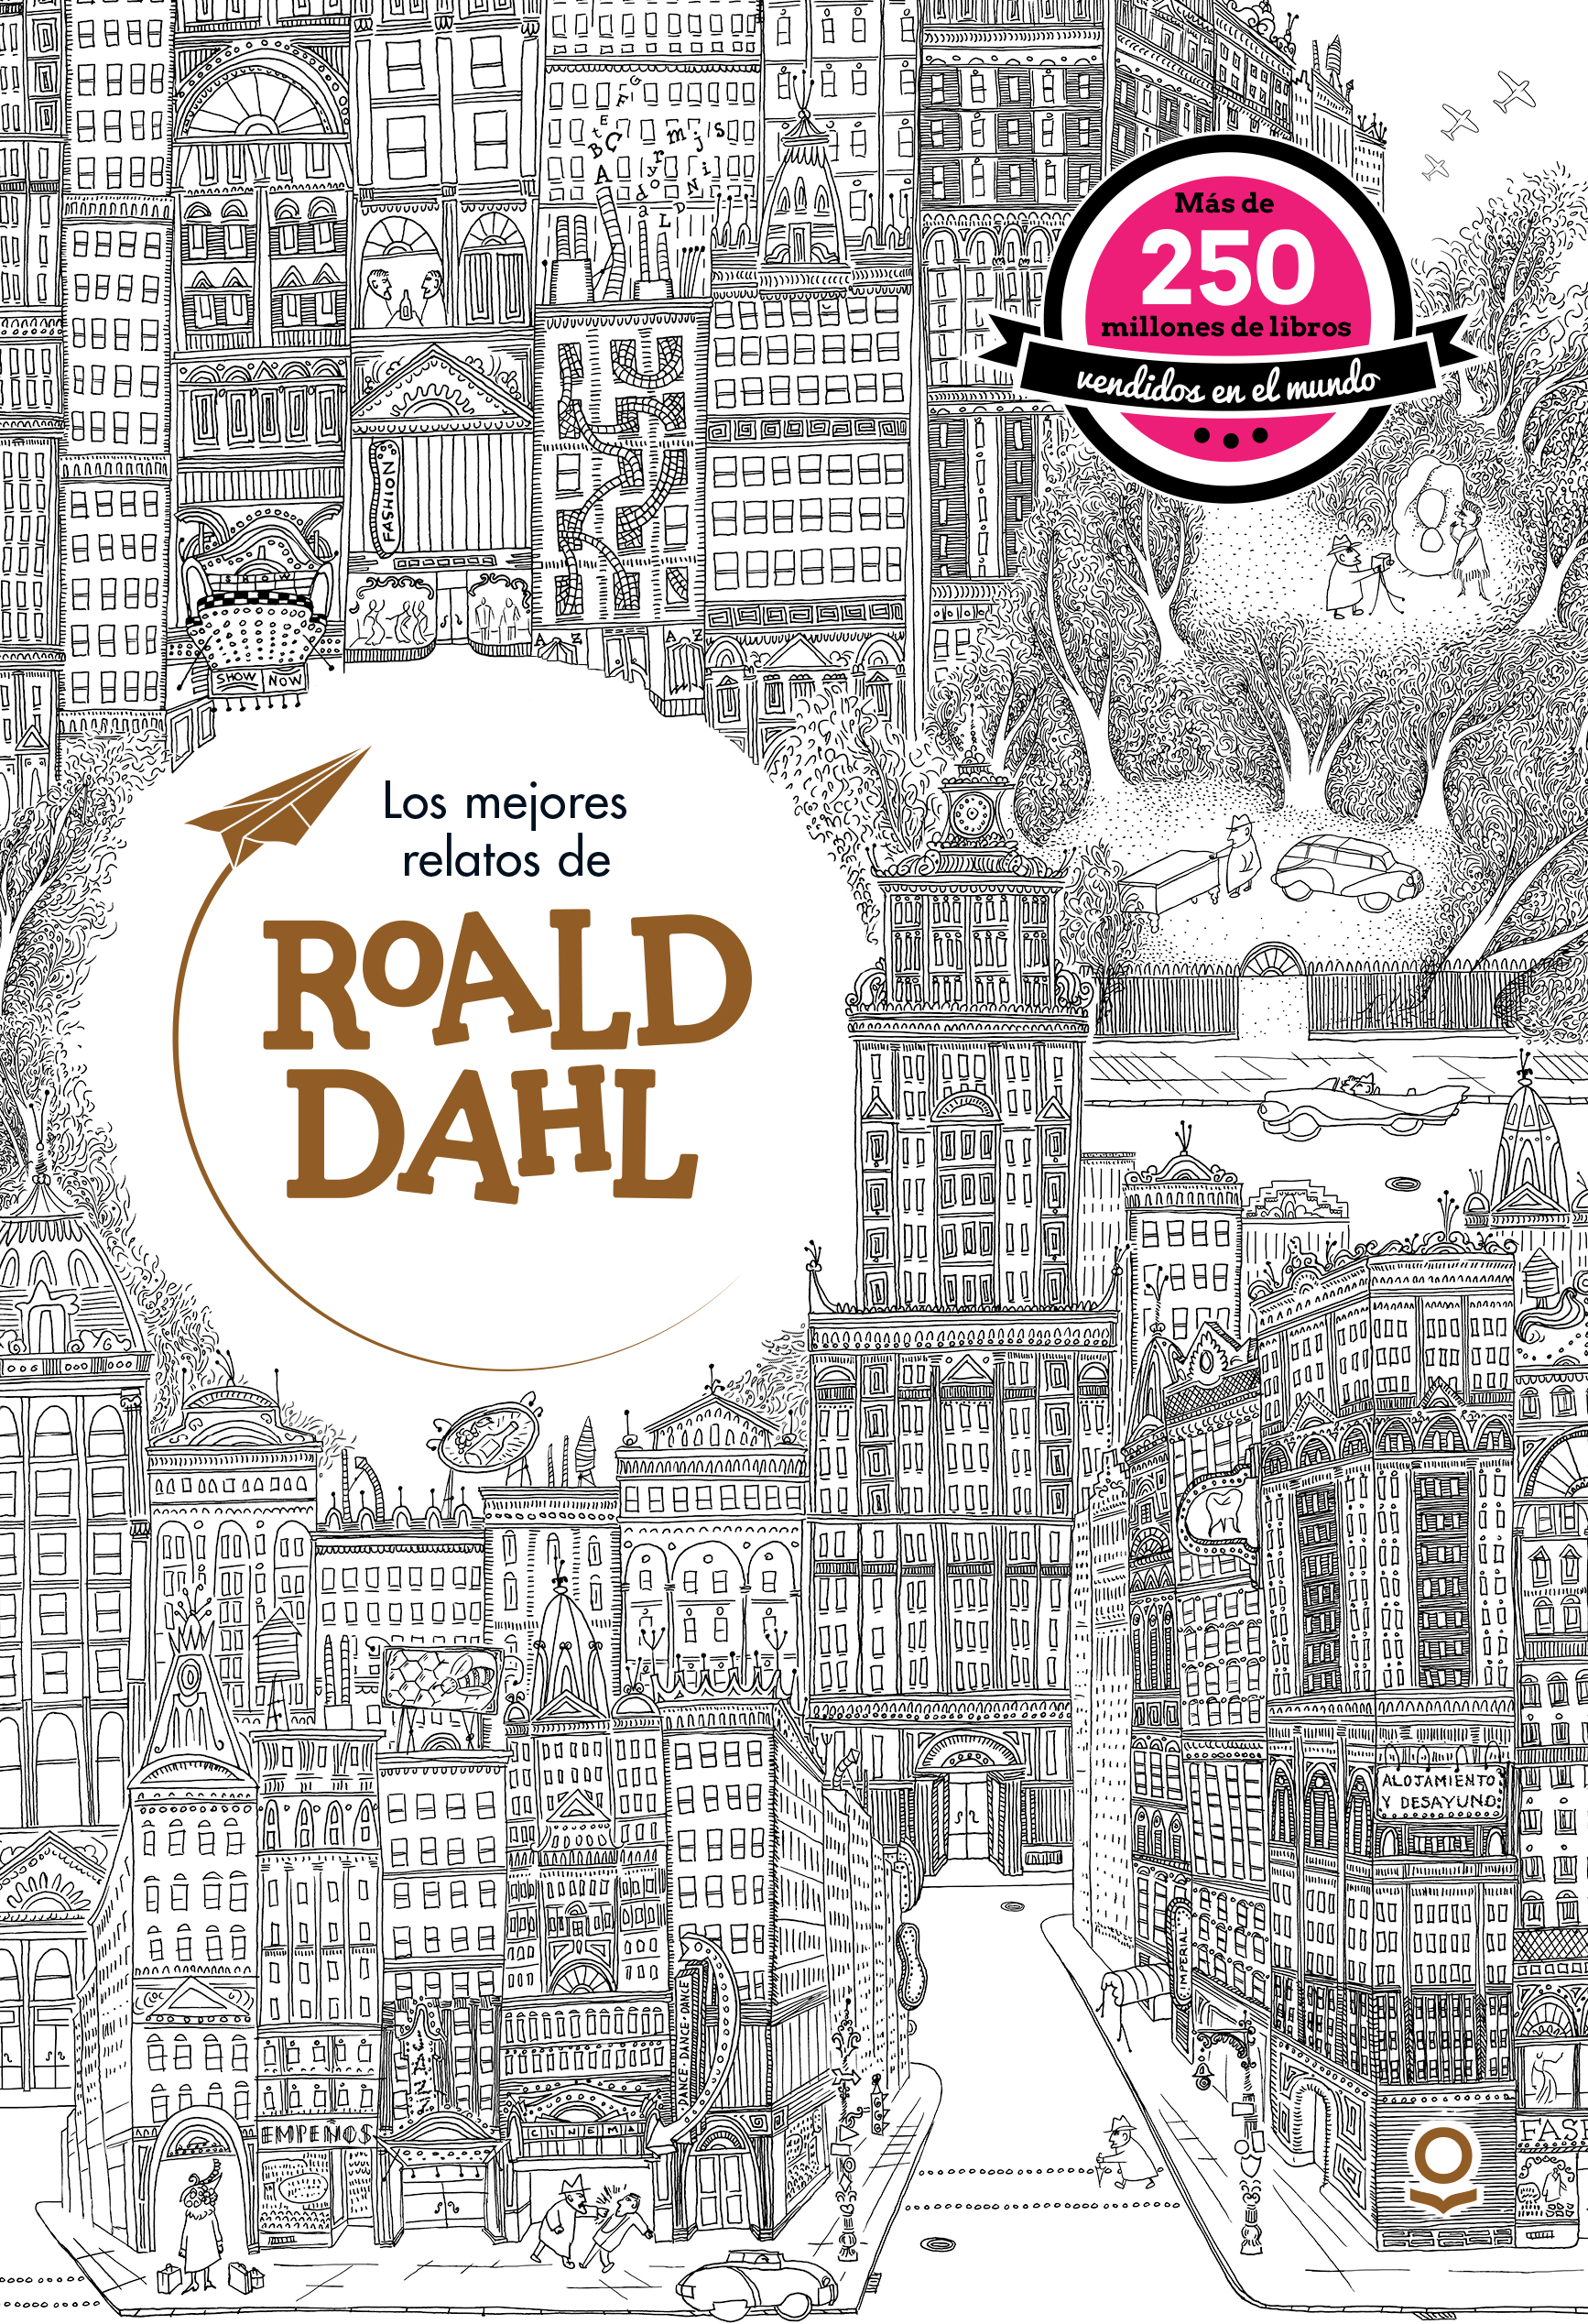 Los Mejores Relatos de Roald Dahl